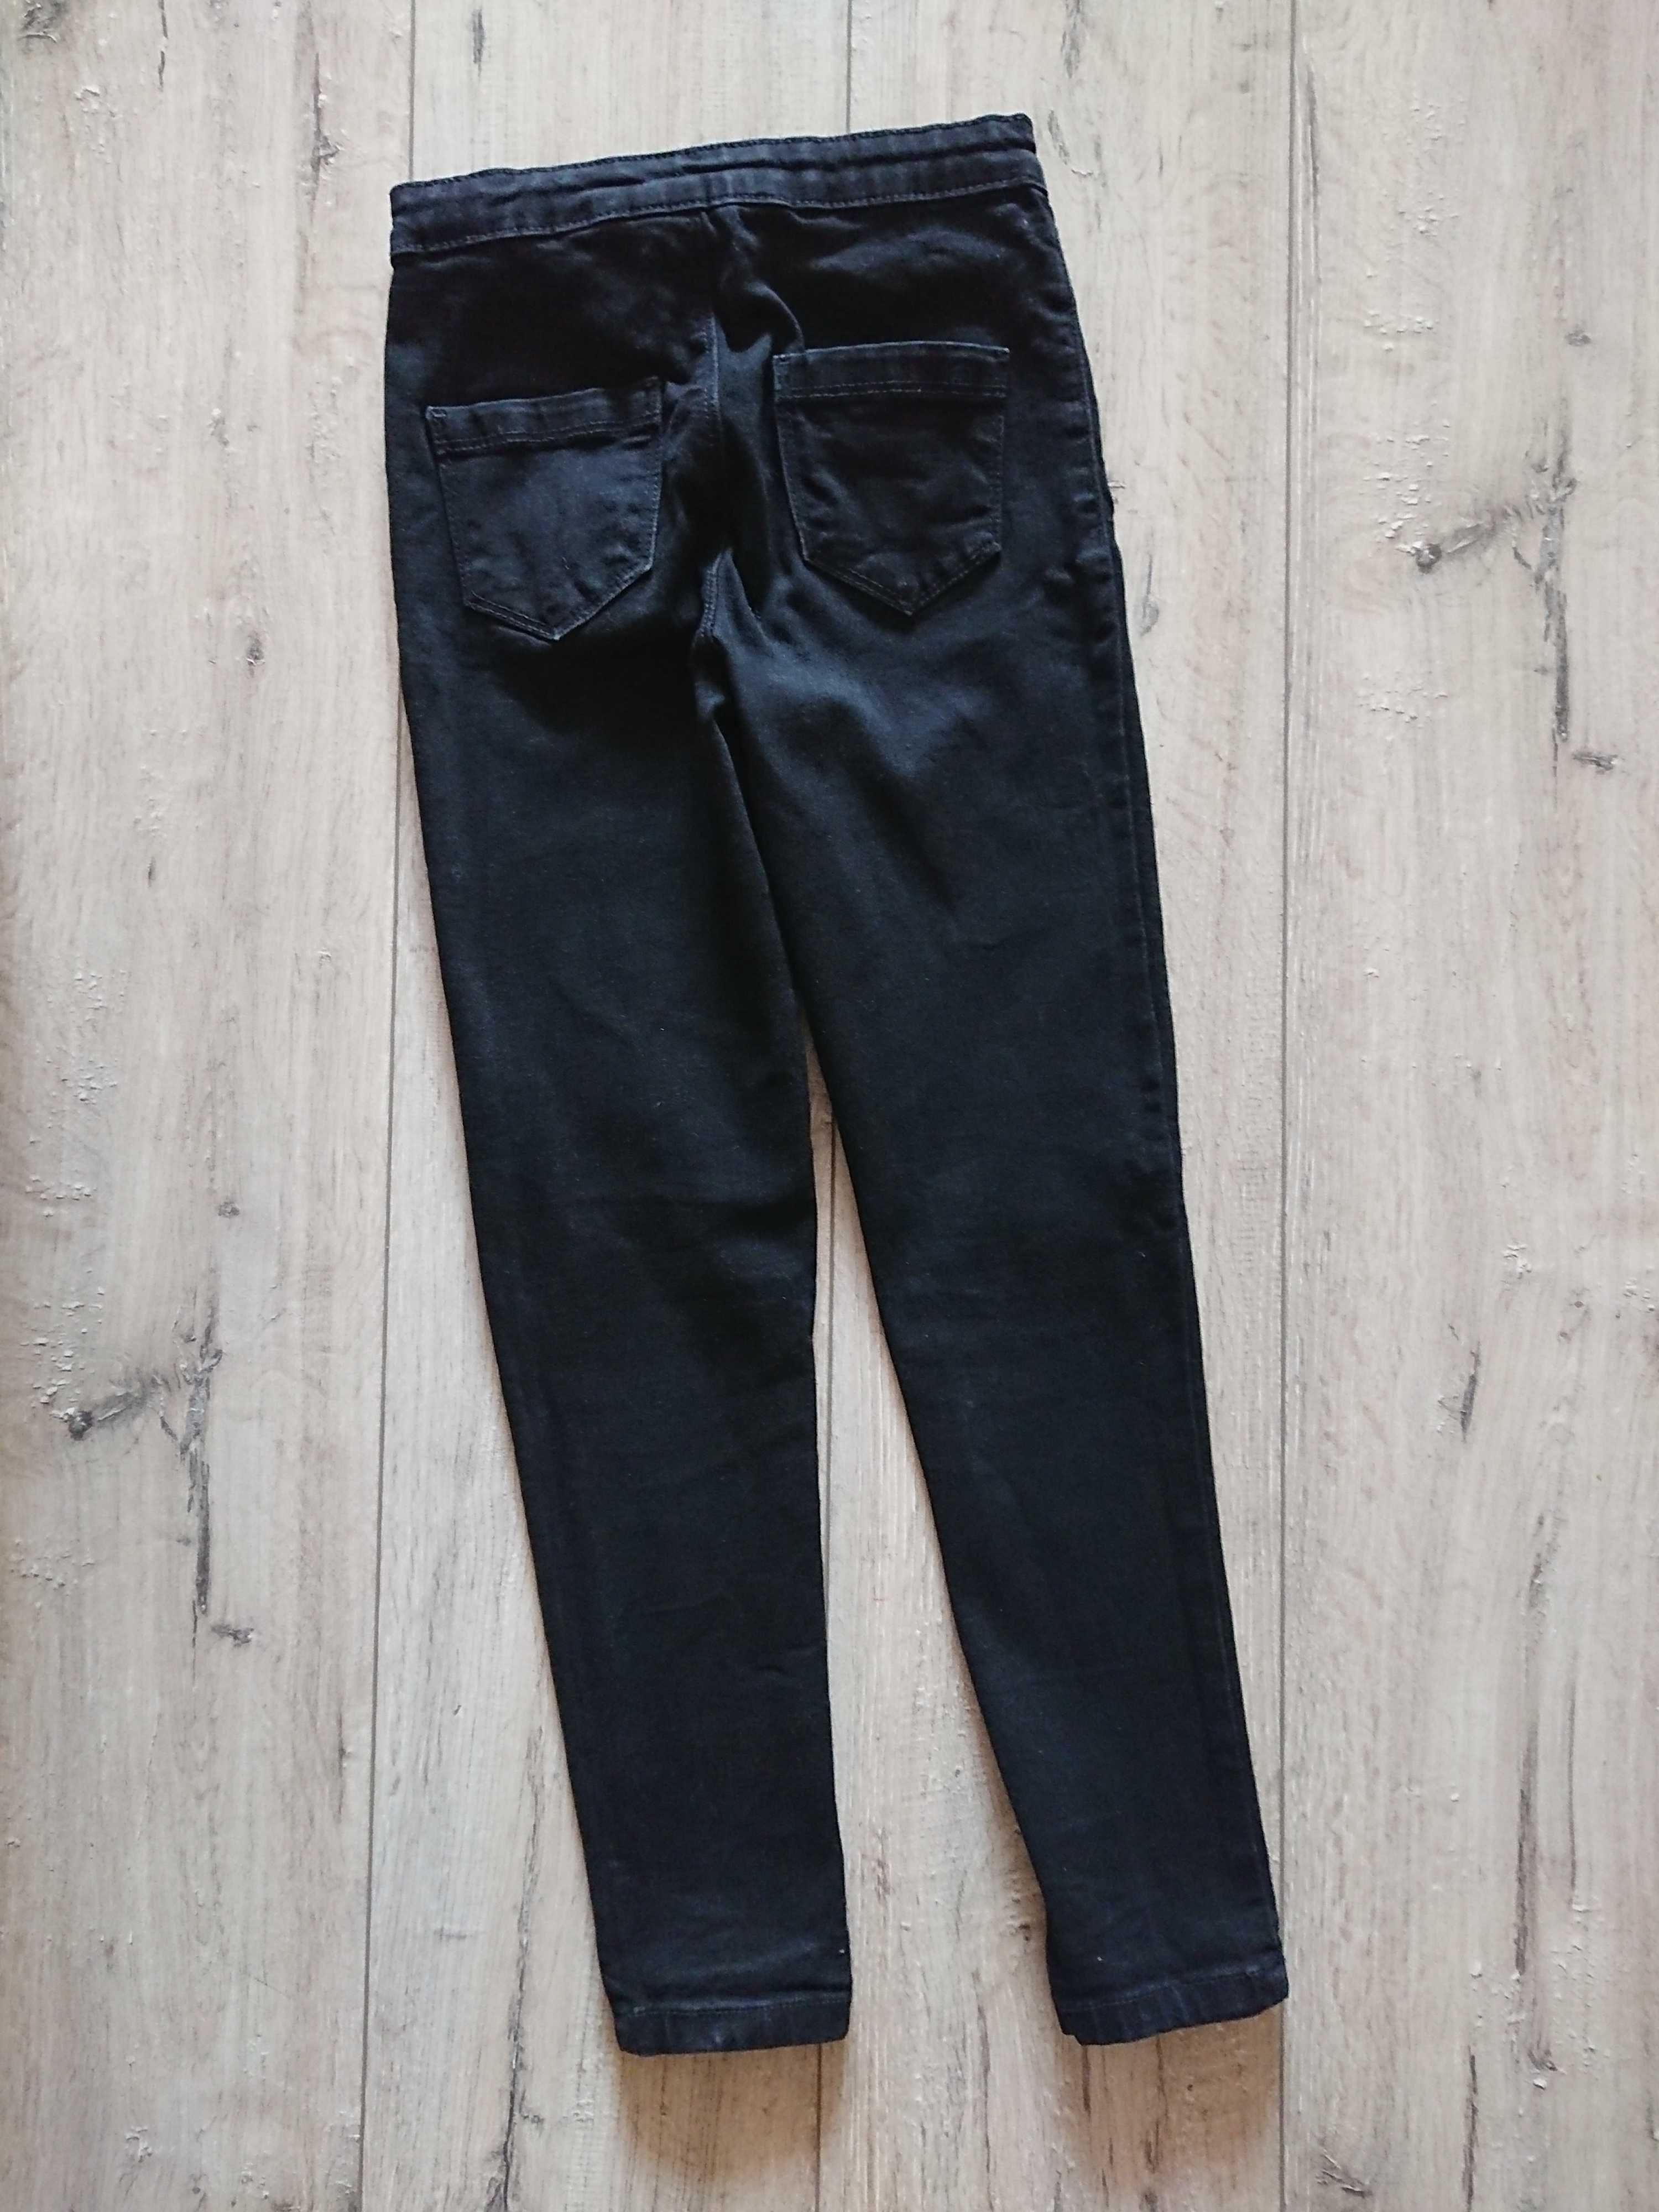 Узкие джинсы скинни с прорезями на коленях Matalan 8-9 лет 128-134 см